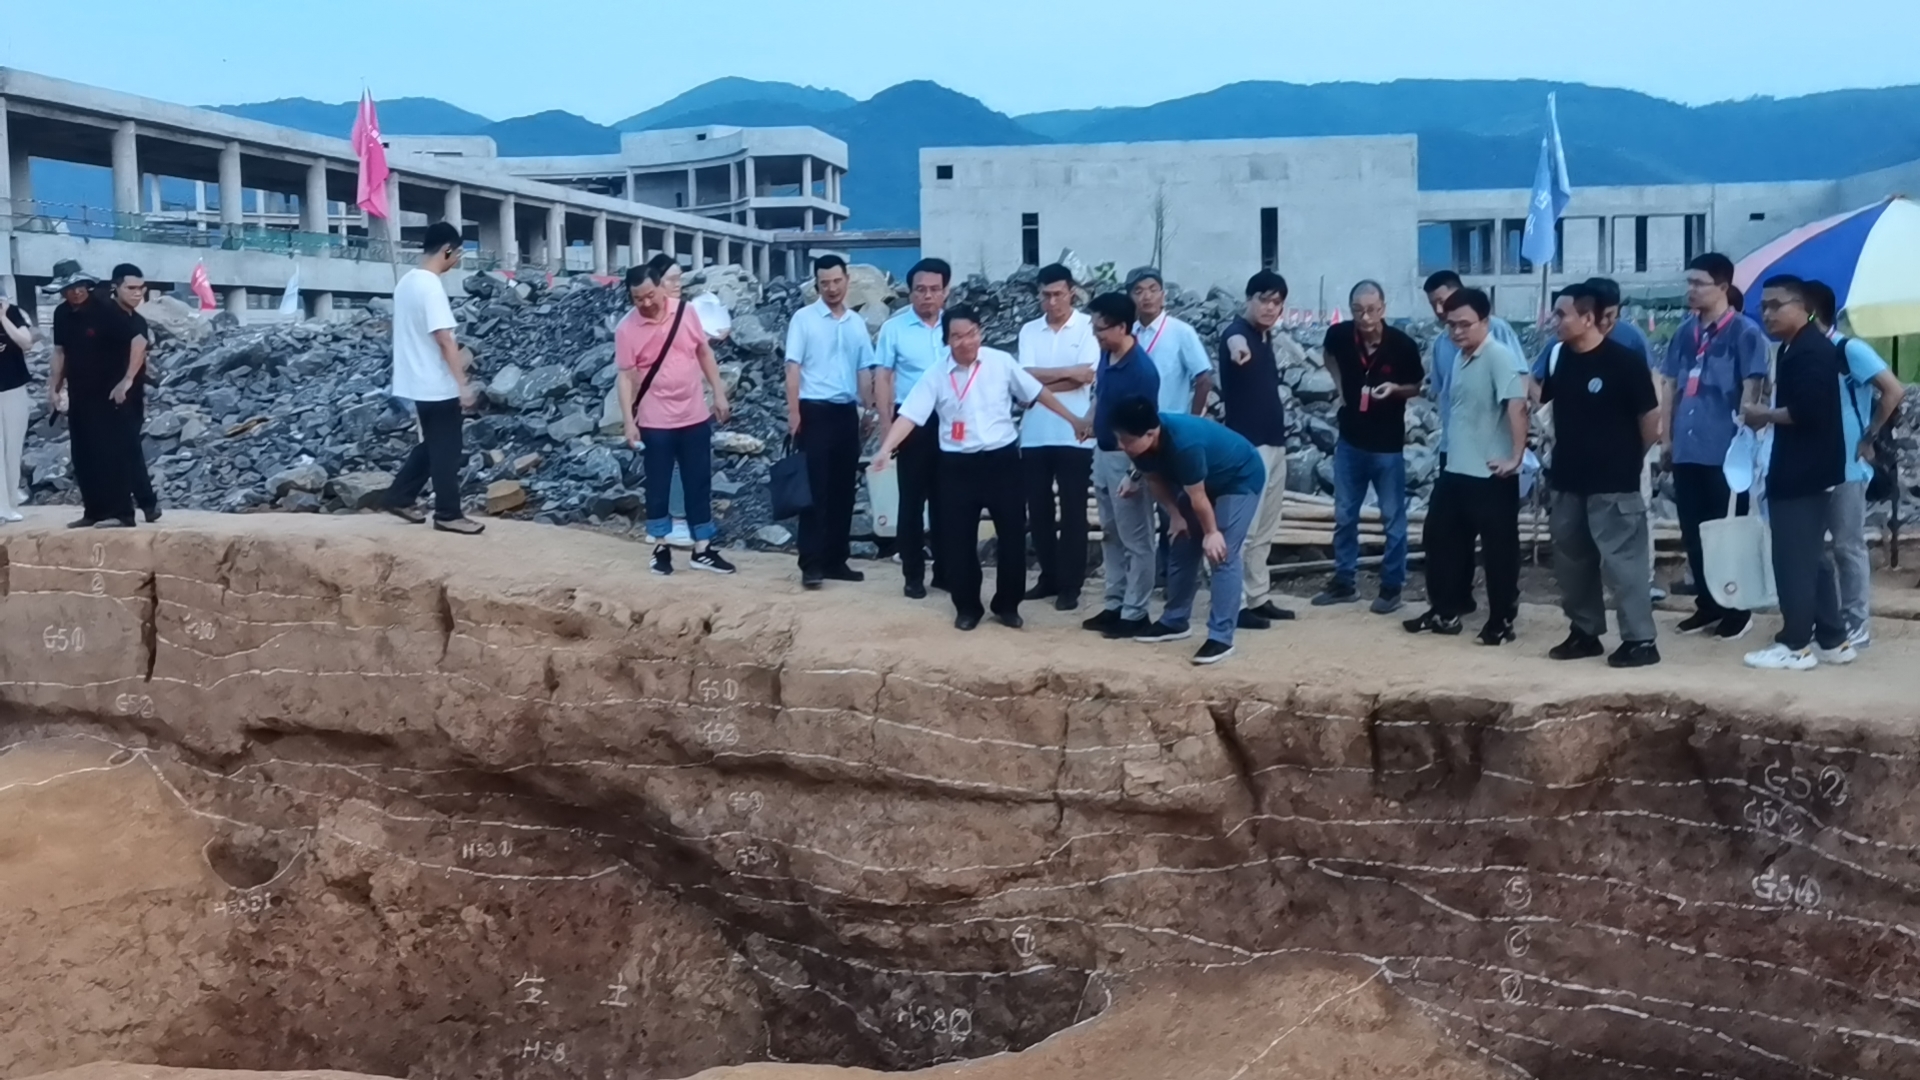 赤壁大湖咀遗址聚焦先秦时期冶金考古新发现